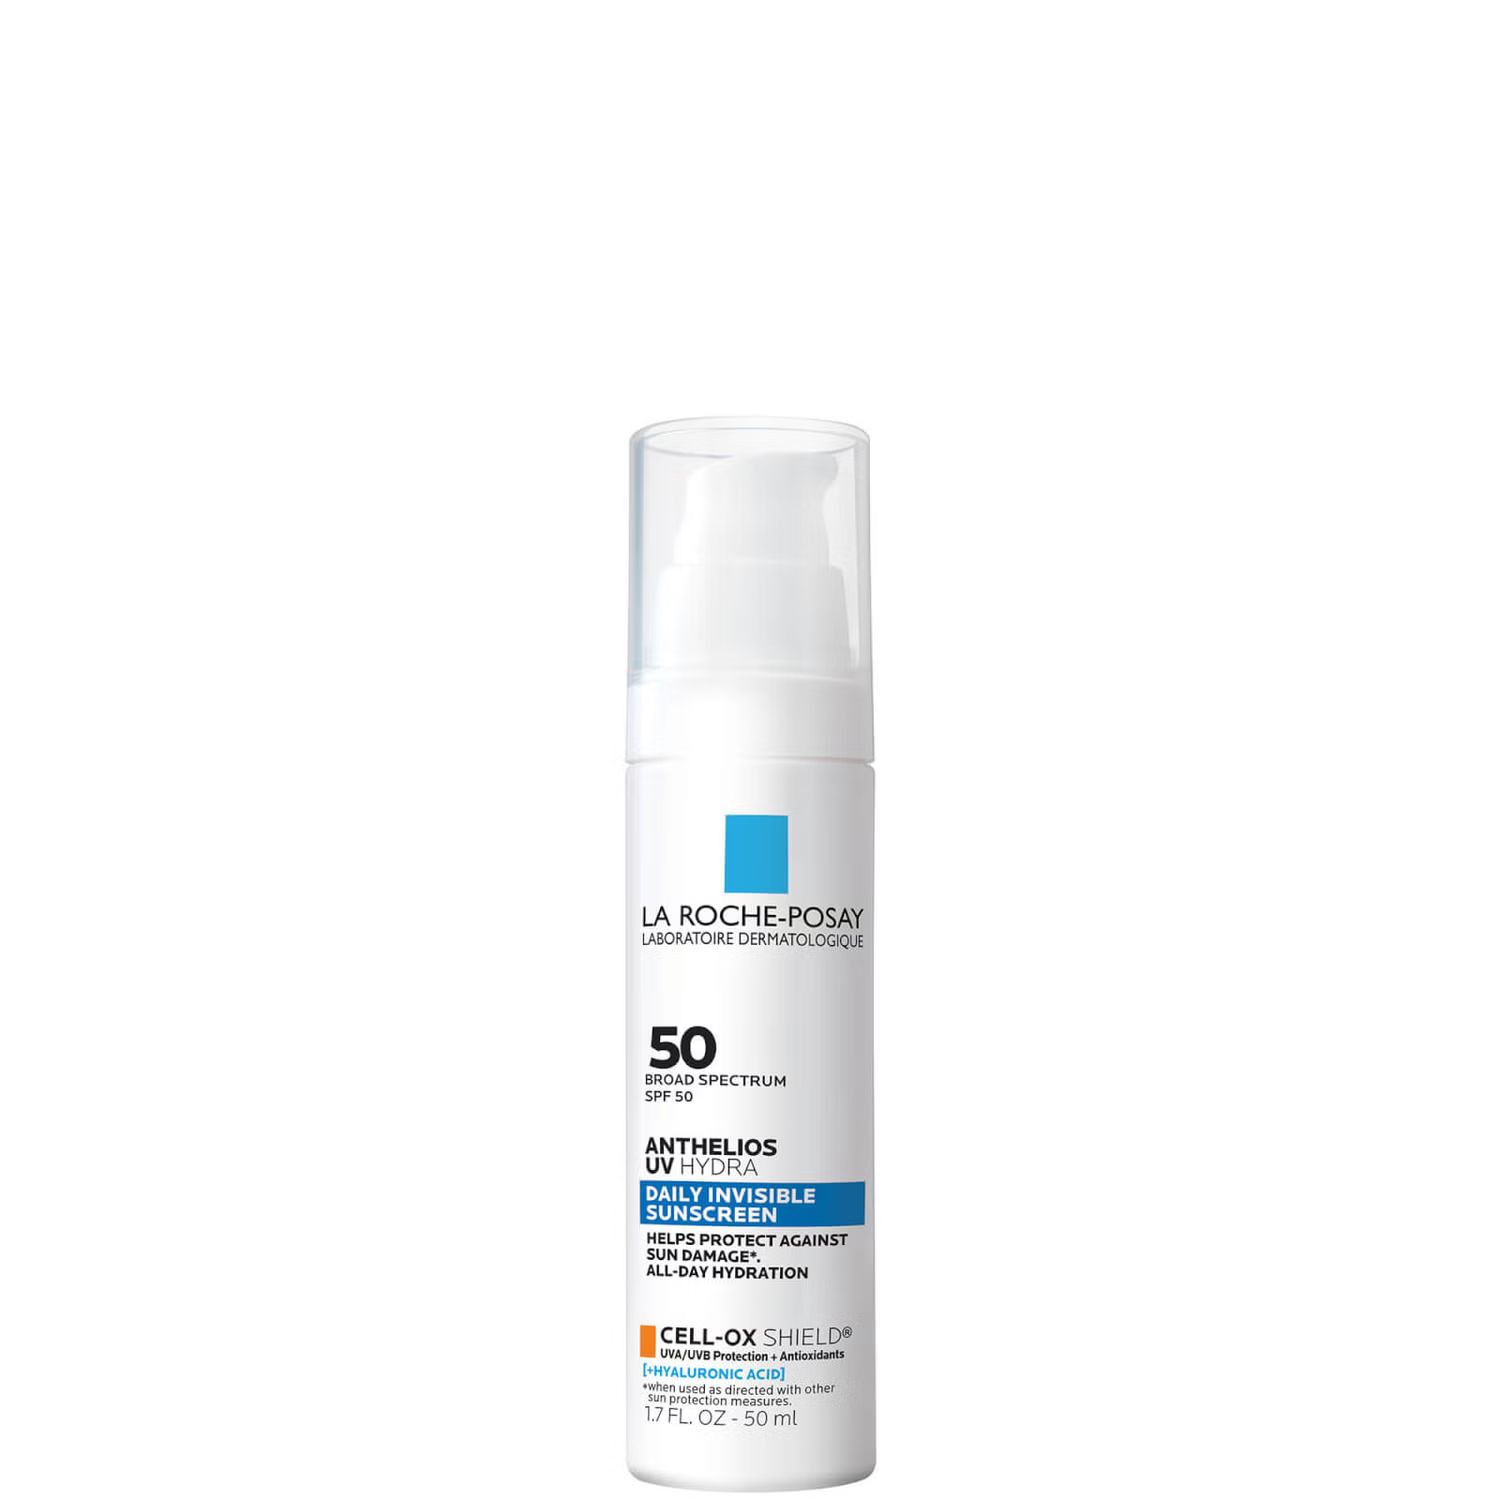 La Roche-Posay Anthelios UV Hydra Daily Invisible Sunscreen SPF 50 50ml | Dermstore (US)